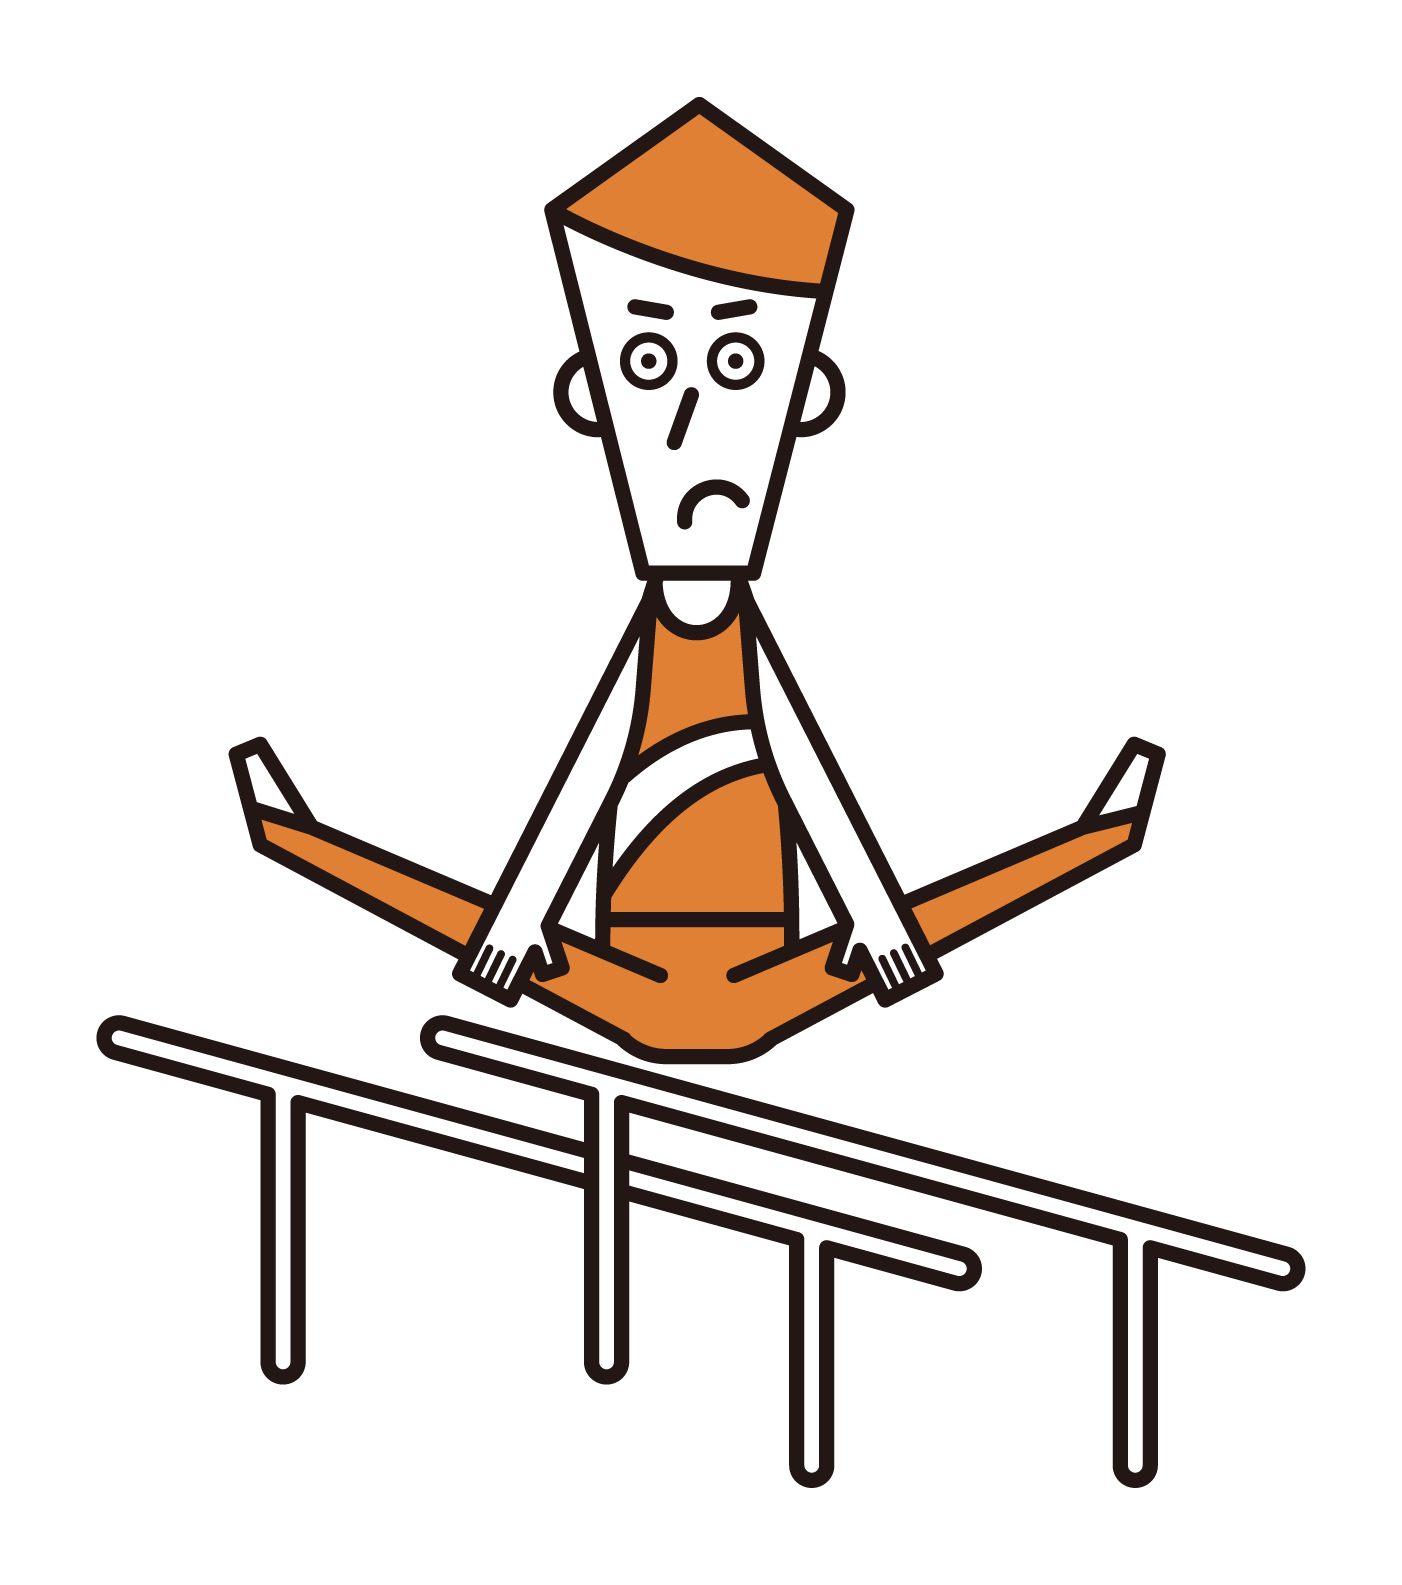 體操運動員（男性）的插圖，平行棒